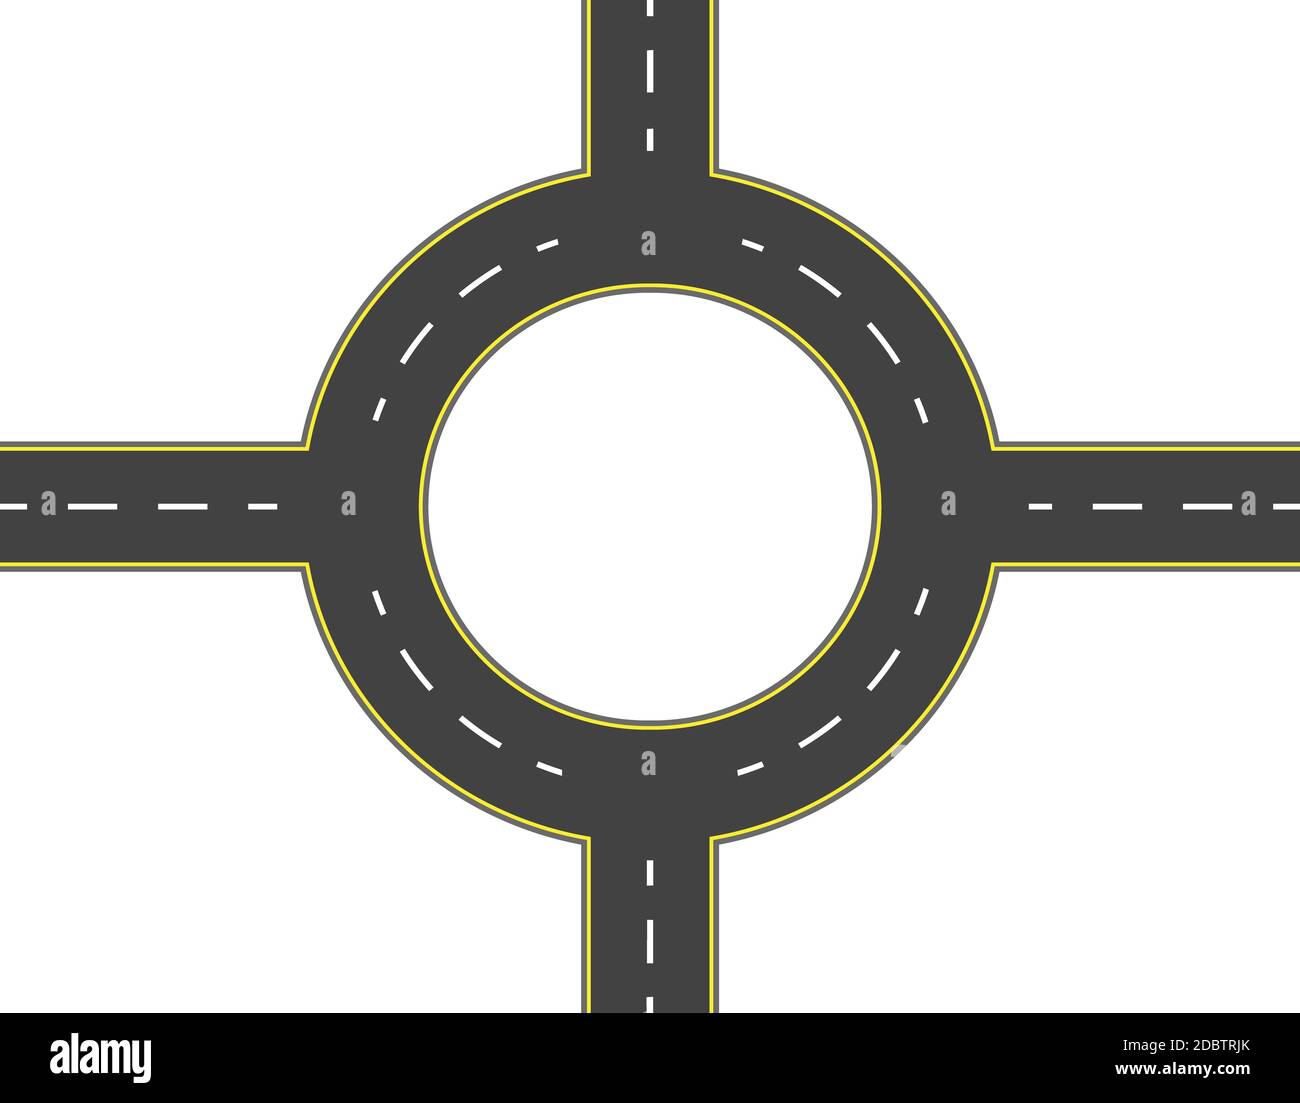 Straße, Autobahn, Kreisverkehr Ansicht von oben. Zweispurigen Straßen mit den gleichen Markierungen. Vector Illustration Stockfoto